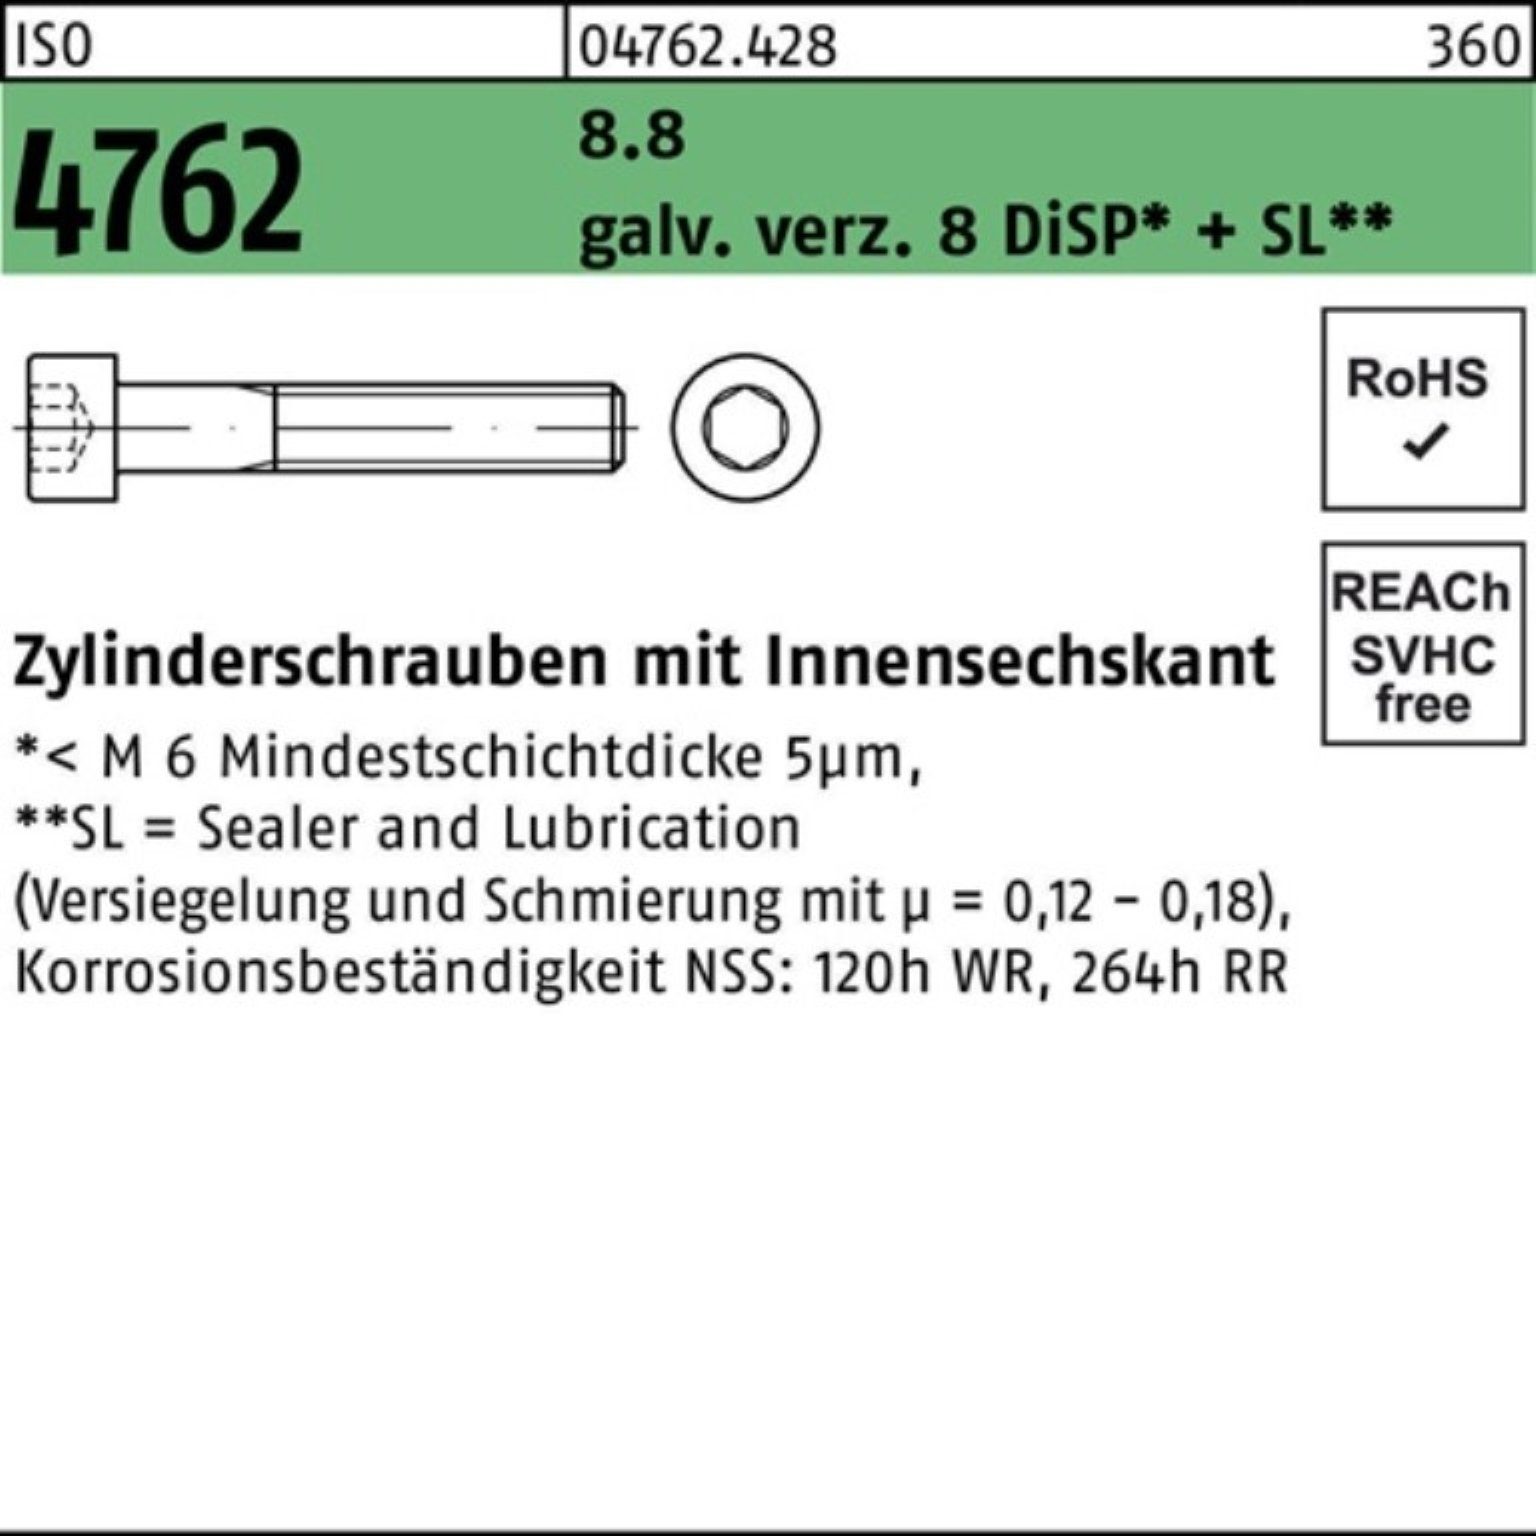 8.8 galv.verz. 100er Innen-6kt 4762 ISO Zylinderschraube Pack 8 Zylinderschraube Reyher M12x80